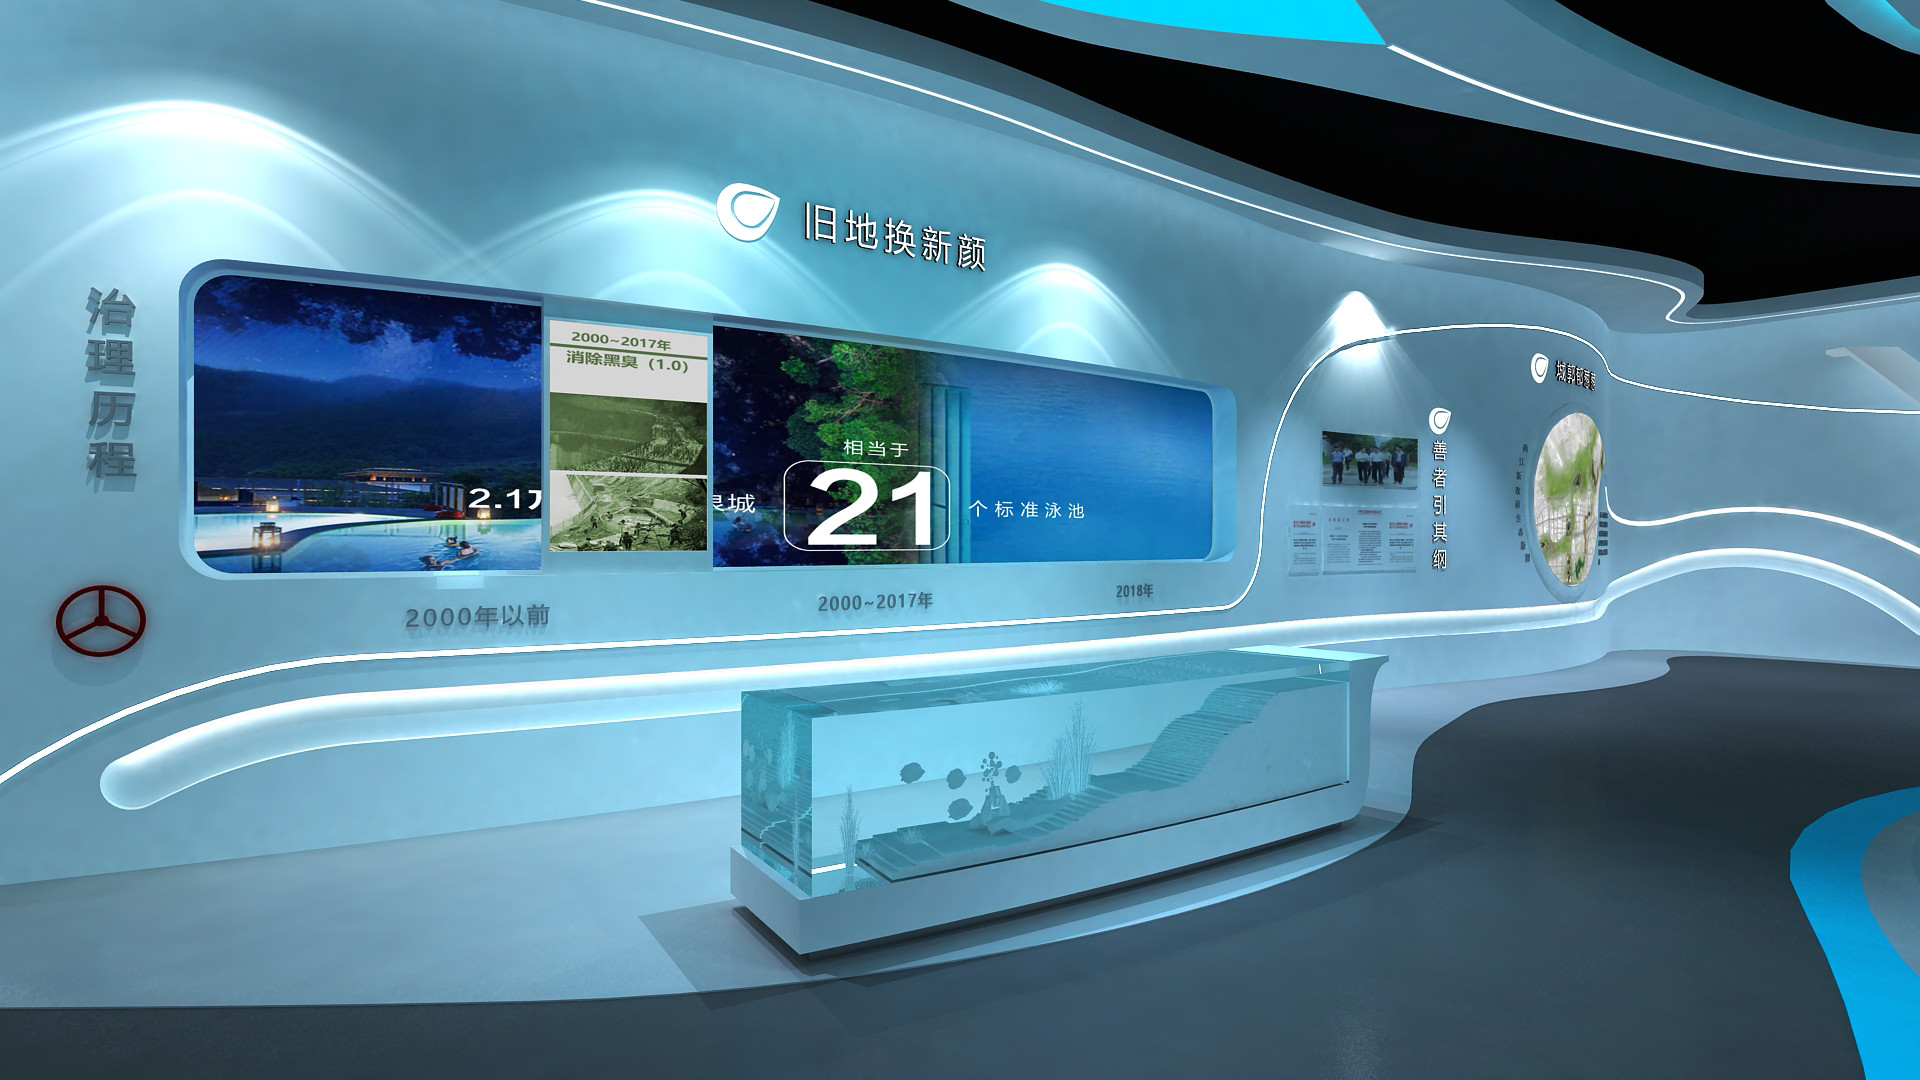 智能体验厅方案 深圳市概念展示策划供应